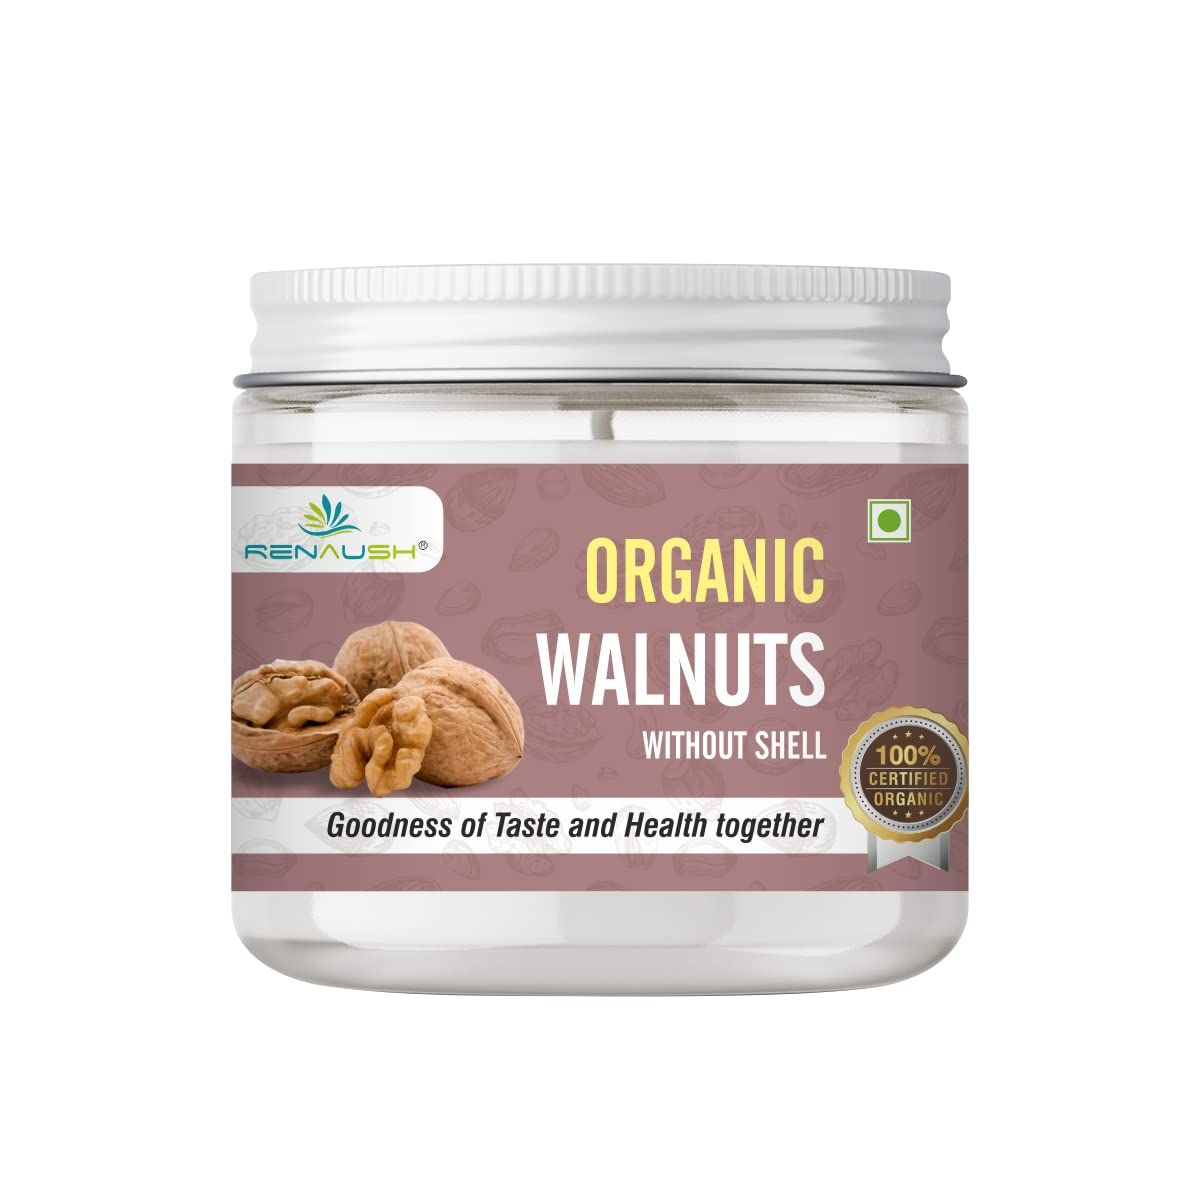 RENAUSH Organic Walnuts Without Shell Image